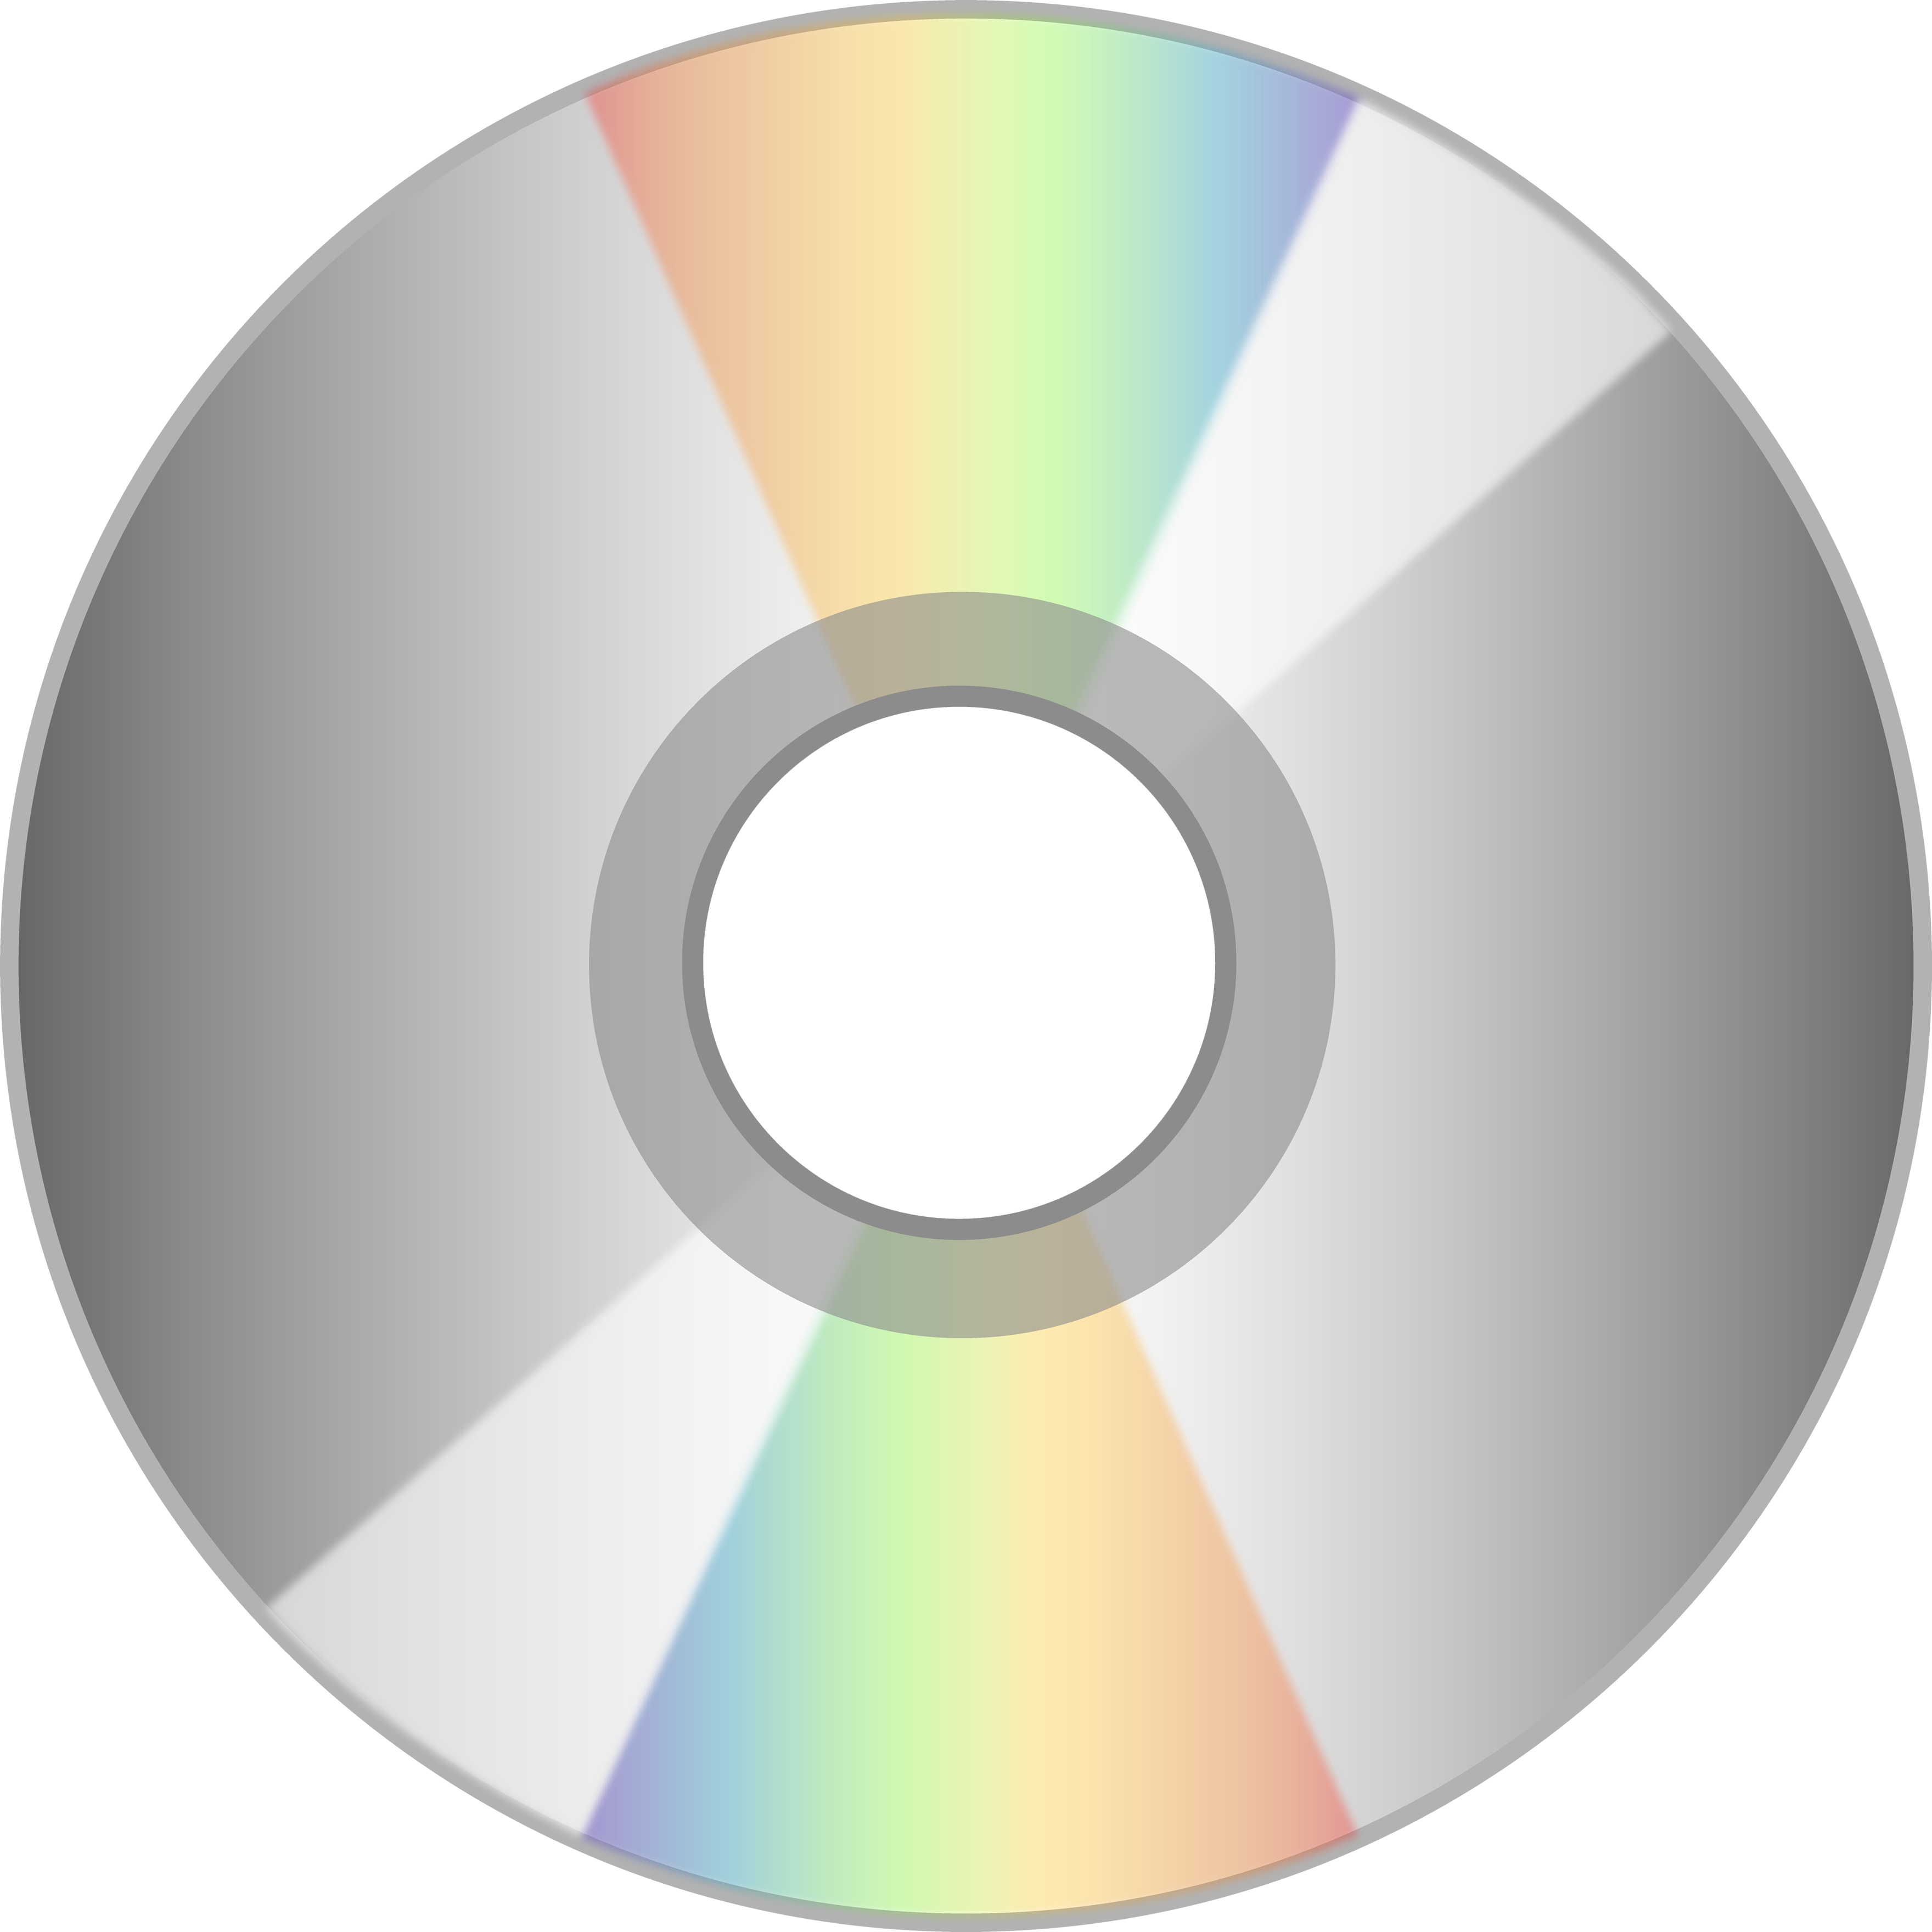 СД диск без фона. Диск на прозрачном фоне. СД диск на прозрачном фоне. Компакт диск.